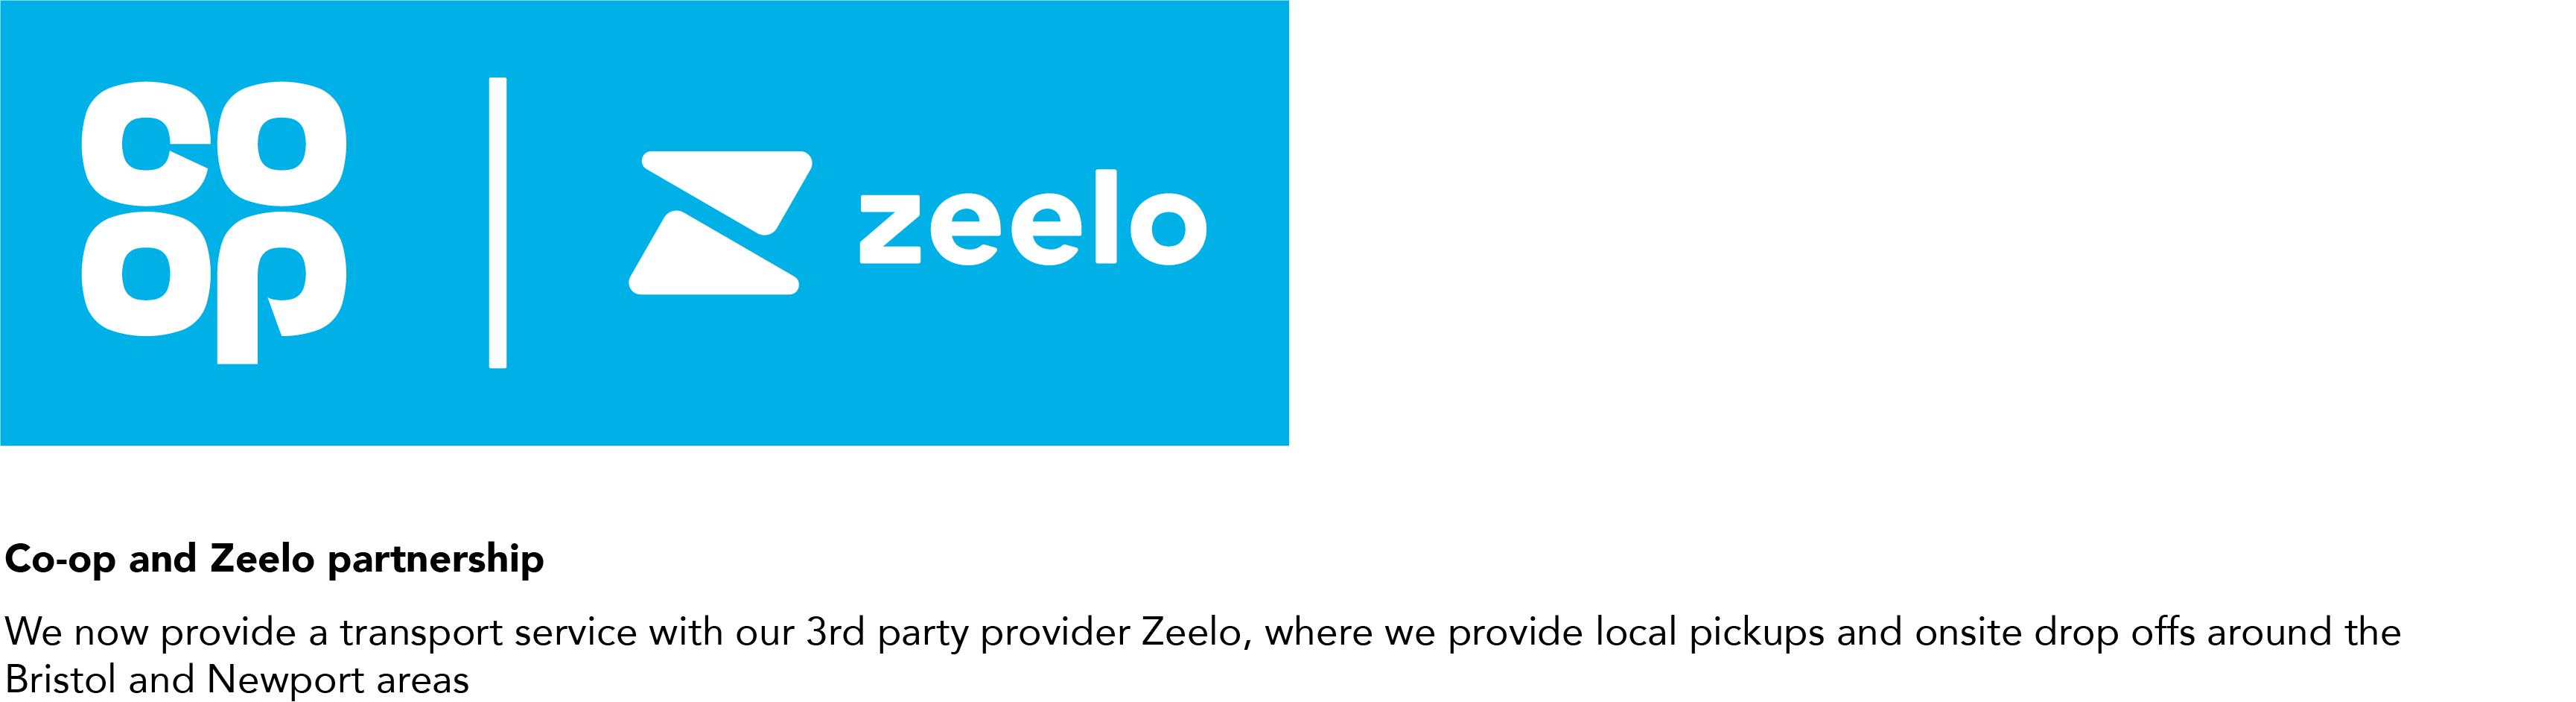 Co-op and Zeelo partnership